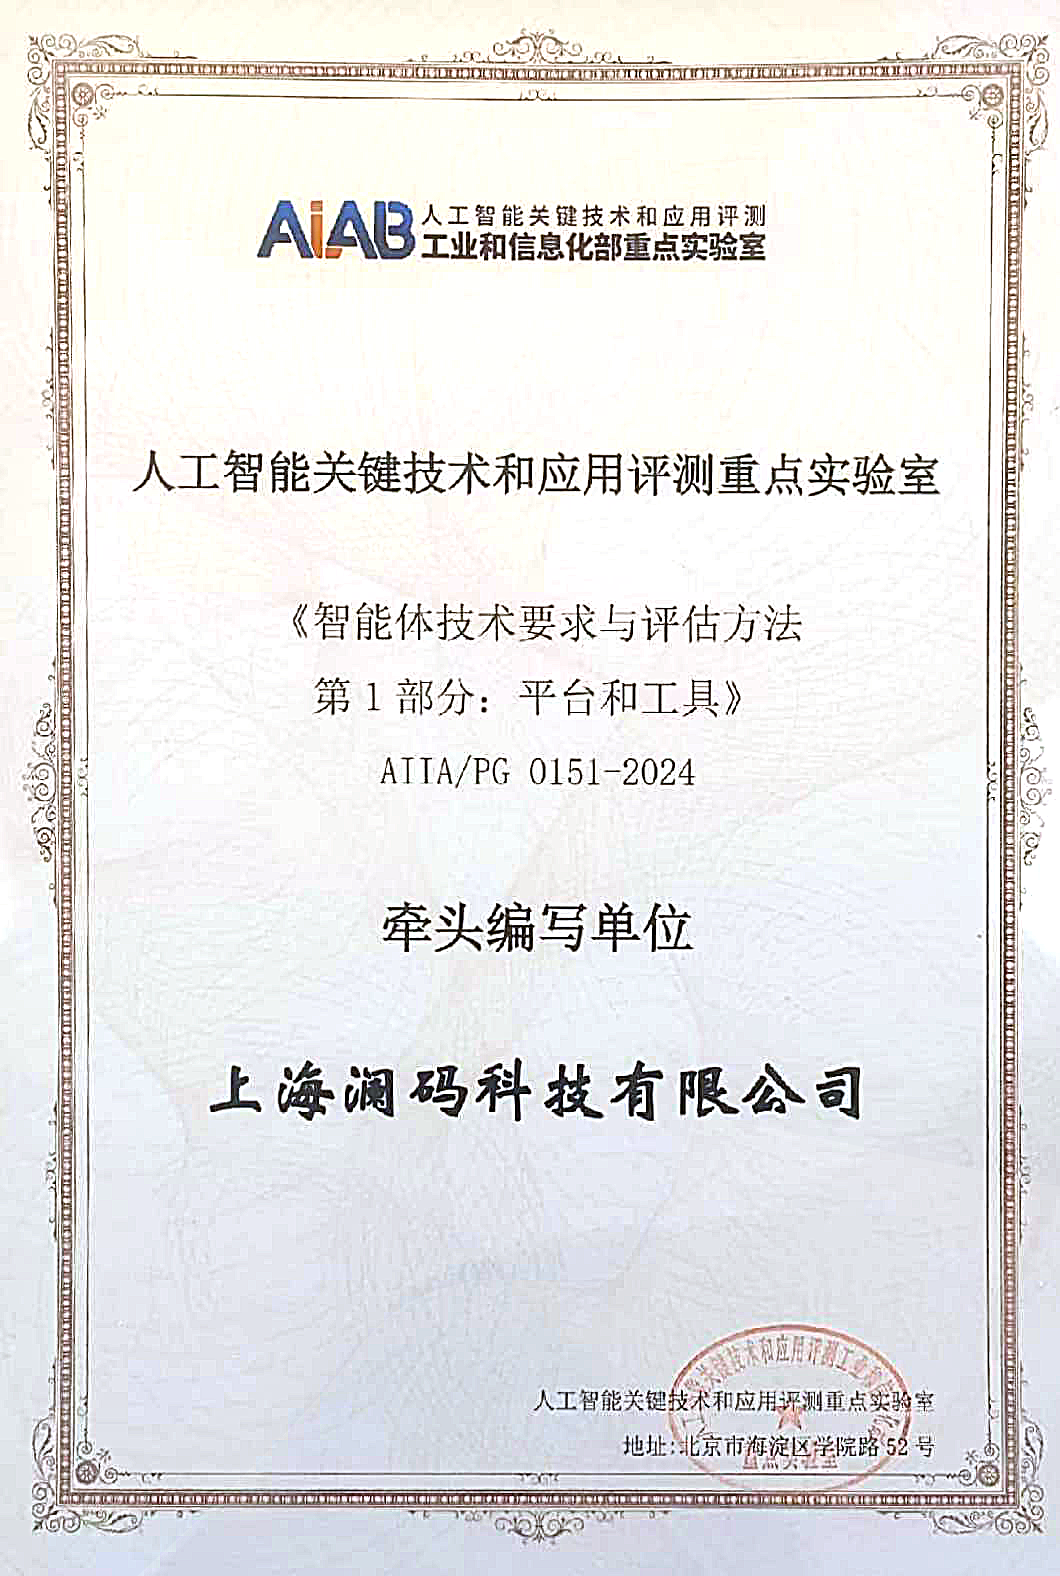 澜码与中国信通院联合牵头编制中国首个Agent标准